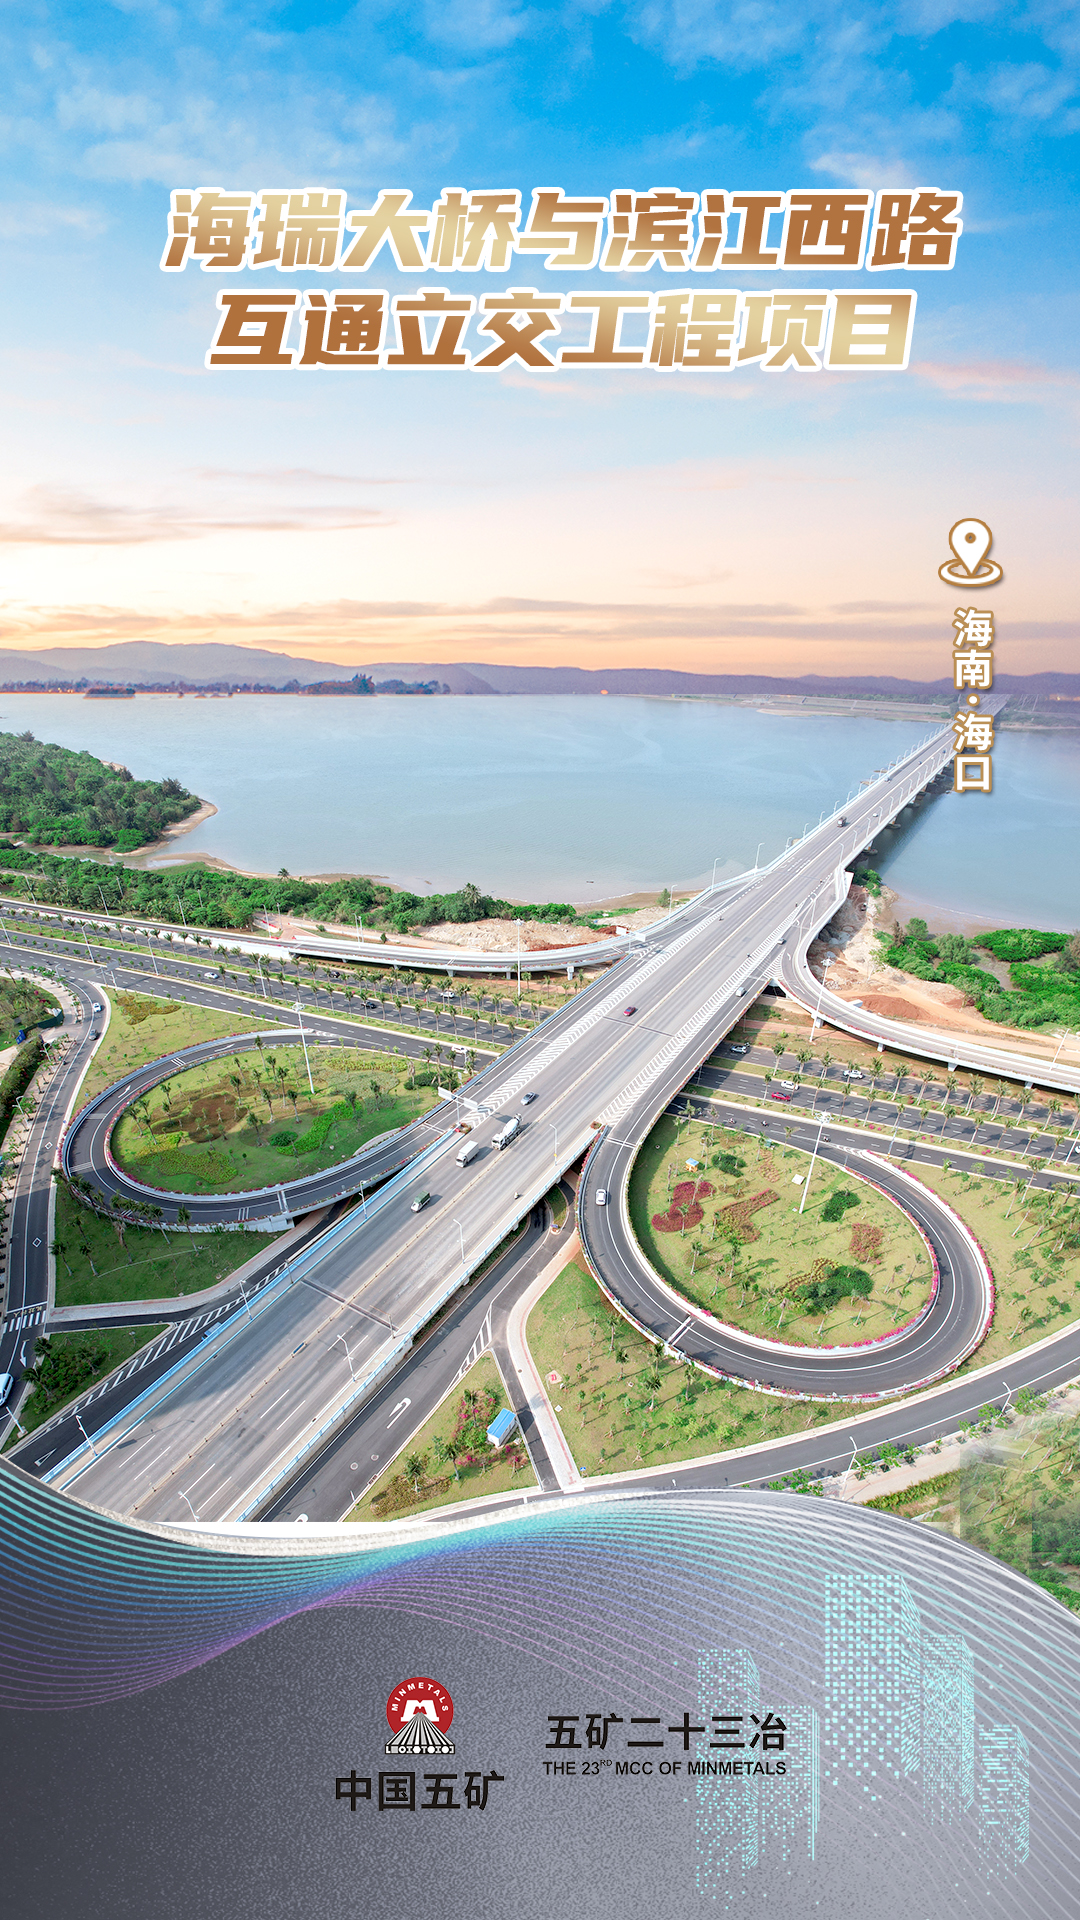 海瑞大桥与滨江西路互通立交工程项目.jpg